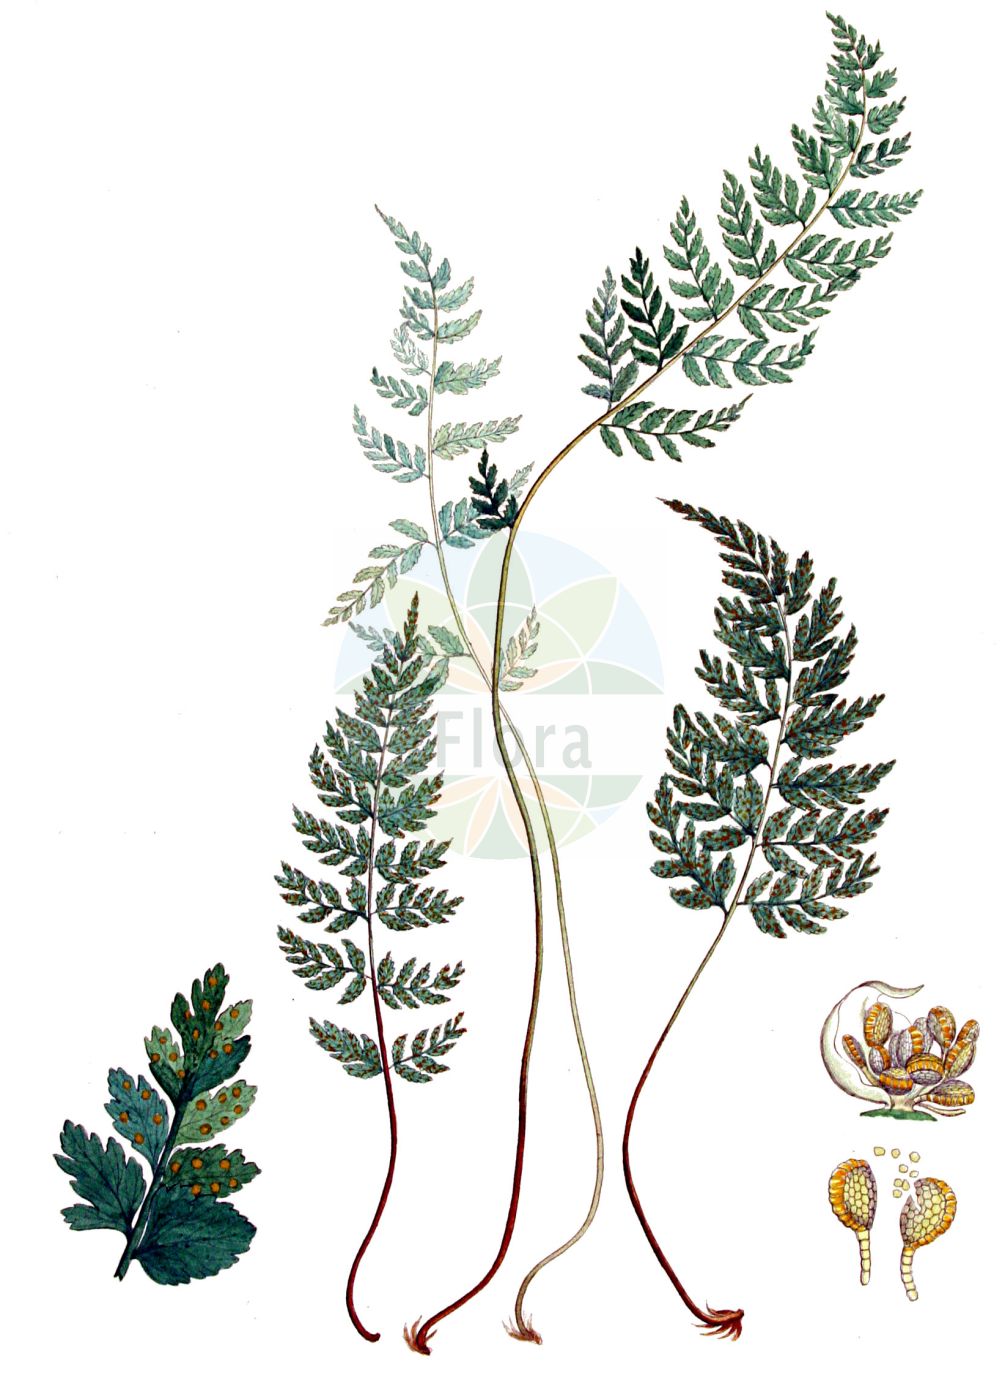 Historische Abbildung von Cystopteris fragilis (Zerbrechlicher Blasenfarn - Brittle Bladder-fern). Das Bild zeigt Blatt, Bluete, Frucht und Same. ---- Historical Drawing of Cystopteris fragilis (Zerbrechlicher Blasenfarn - Brittle Bladder-fern). The image is showing leaf, flower, fruit and seed.(Cystopteris fragilis,Zerbrechlicher Blasenfarn,Brittle Bladder-fern,Cystopteris filix-fragilis,Cystopteris fragilis,Polypodium fragile,Zerbrechlicher Blasenfarn,Dickies Blasenfarn,Brittle Bladder-fern,Cystopteris,Blasenfarn,Bladderferns,Cystopteridaceae,Bladderfern family,Blasenfarngewächse,Blatt,Bluete,Frucht,Same,leaf,flower,fruit,seed,Kops (1800-1934))